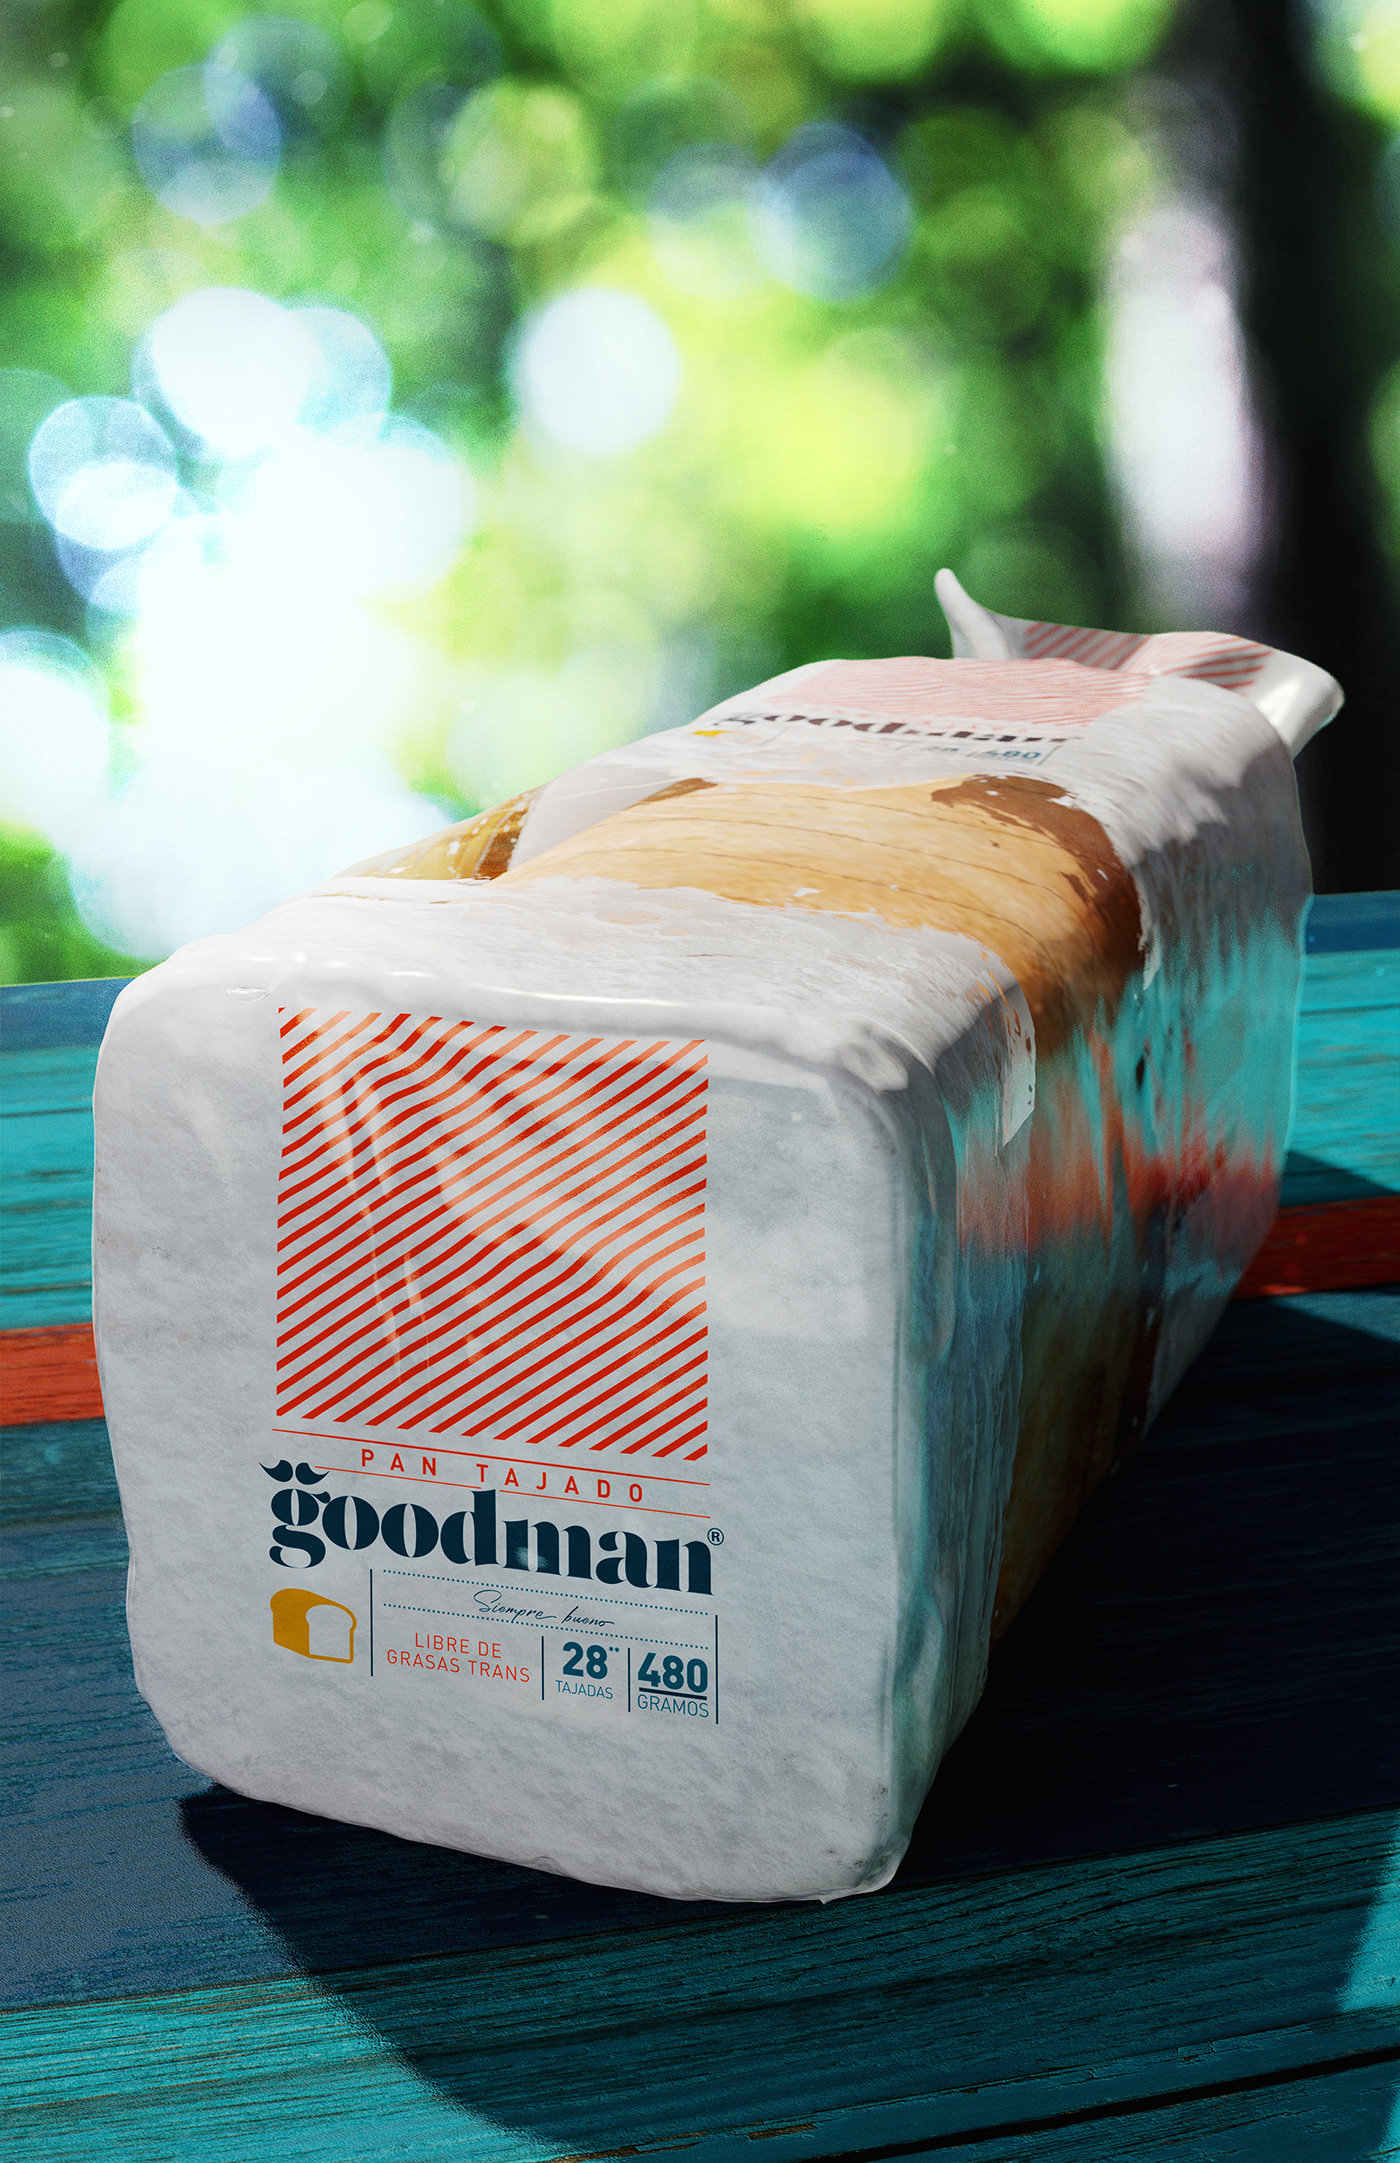 3D imaging brand logo Packaging sliced bread